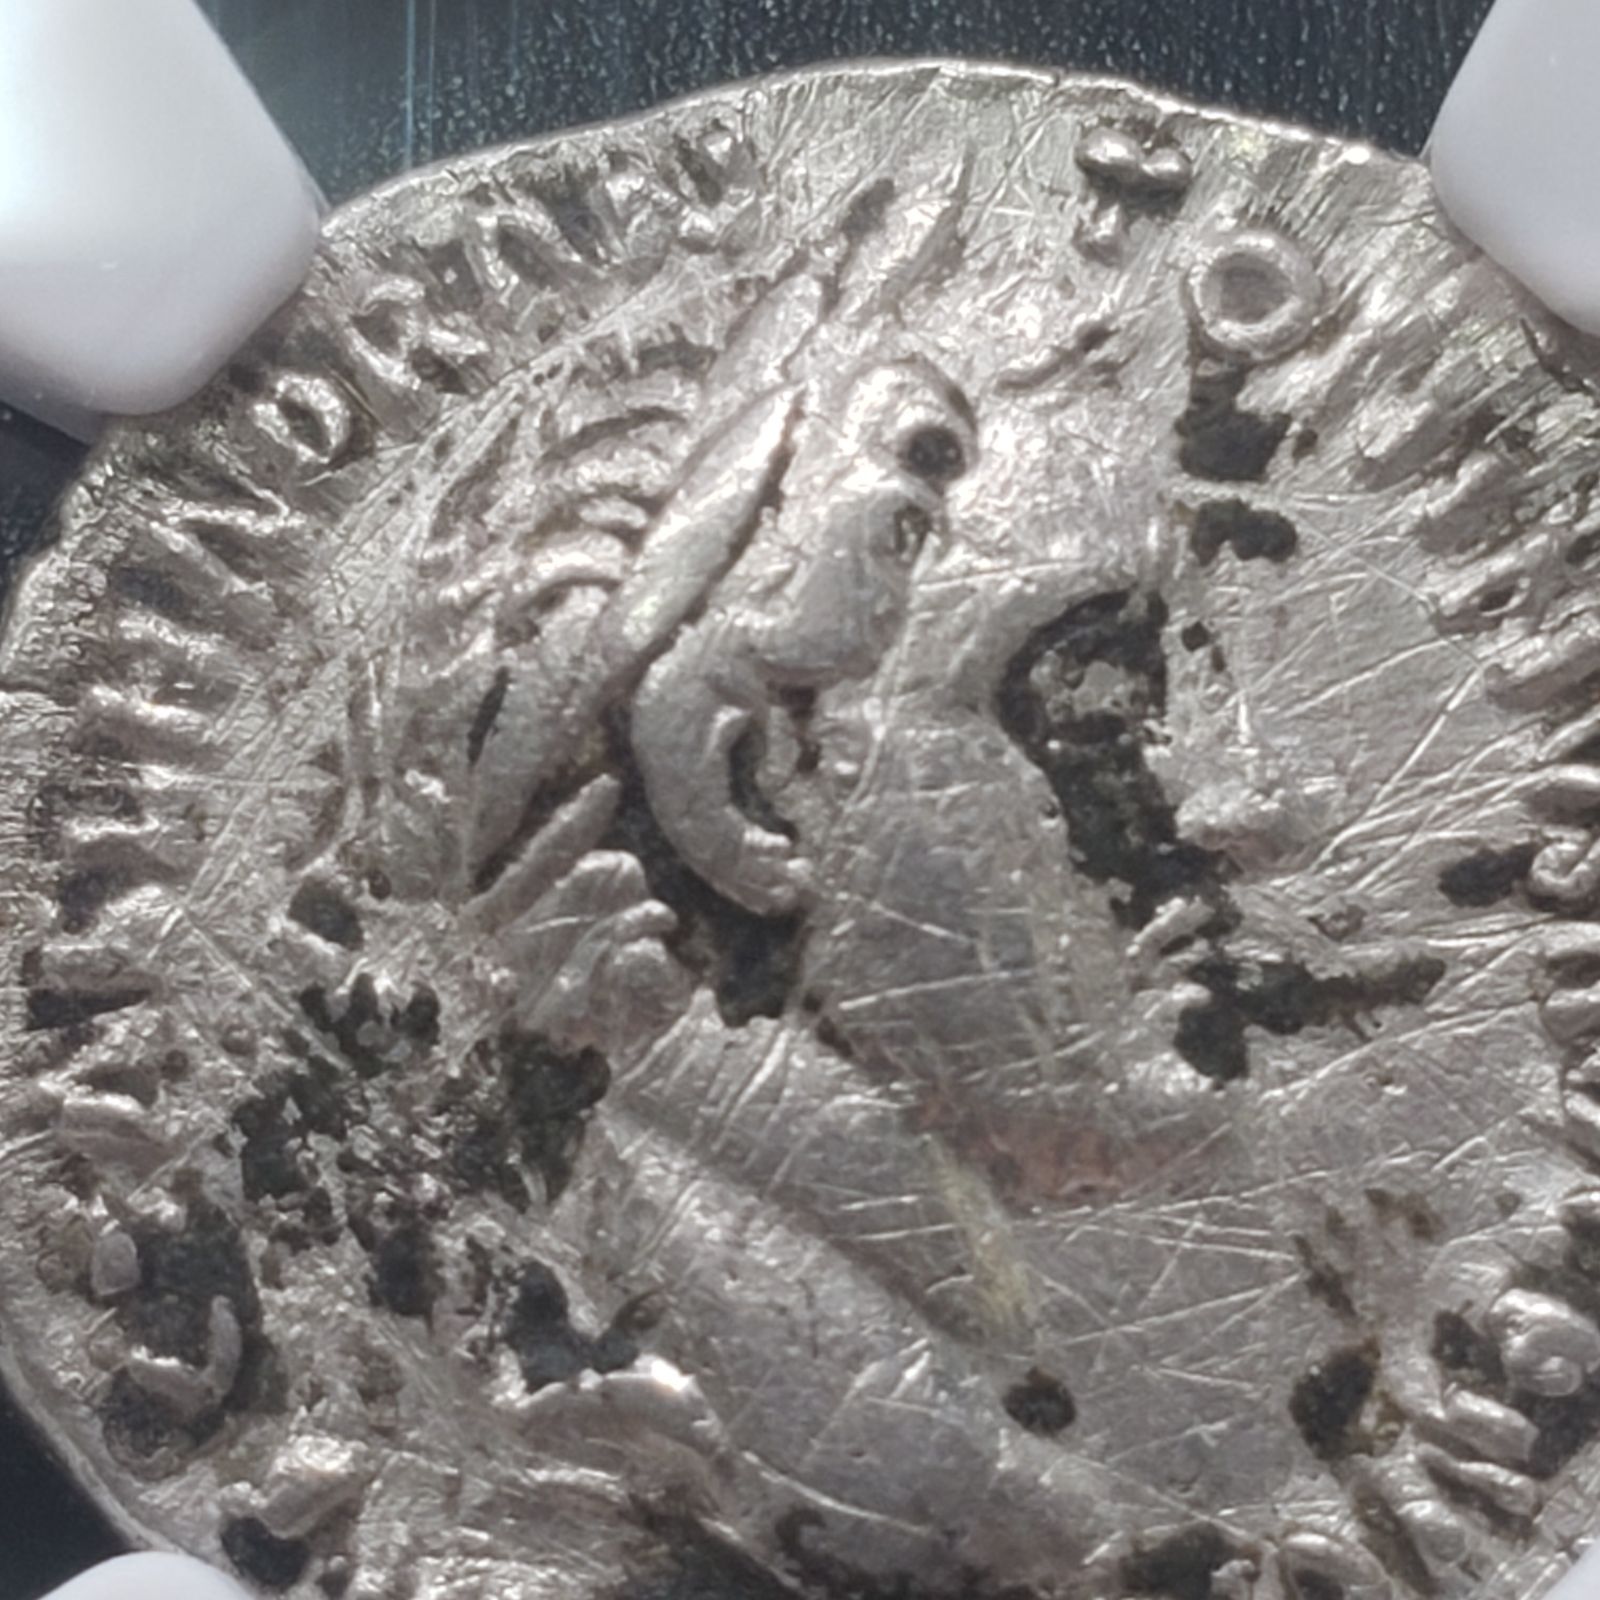 アントニヌス・ピウス アウレウス 金貨 古代ローマ 五賢帝  NGC古代コイン